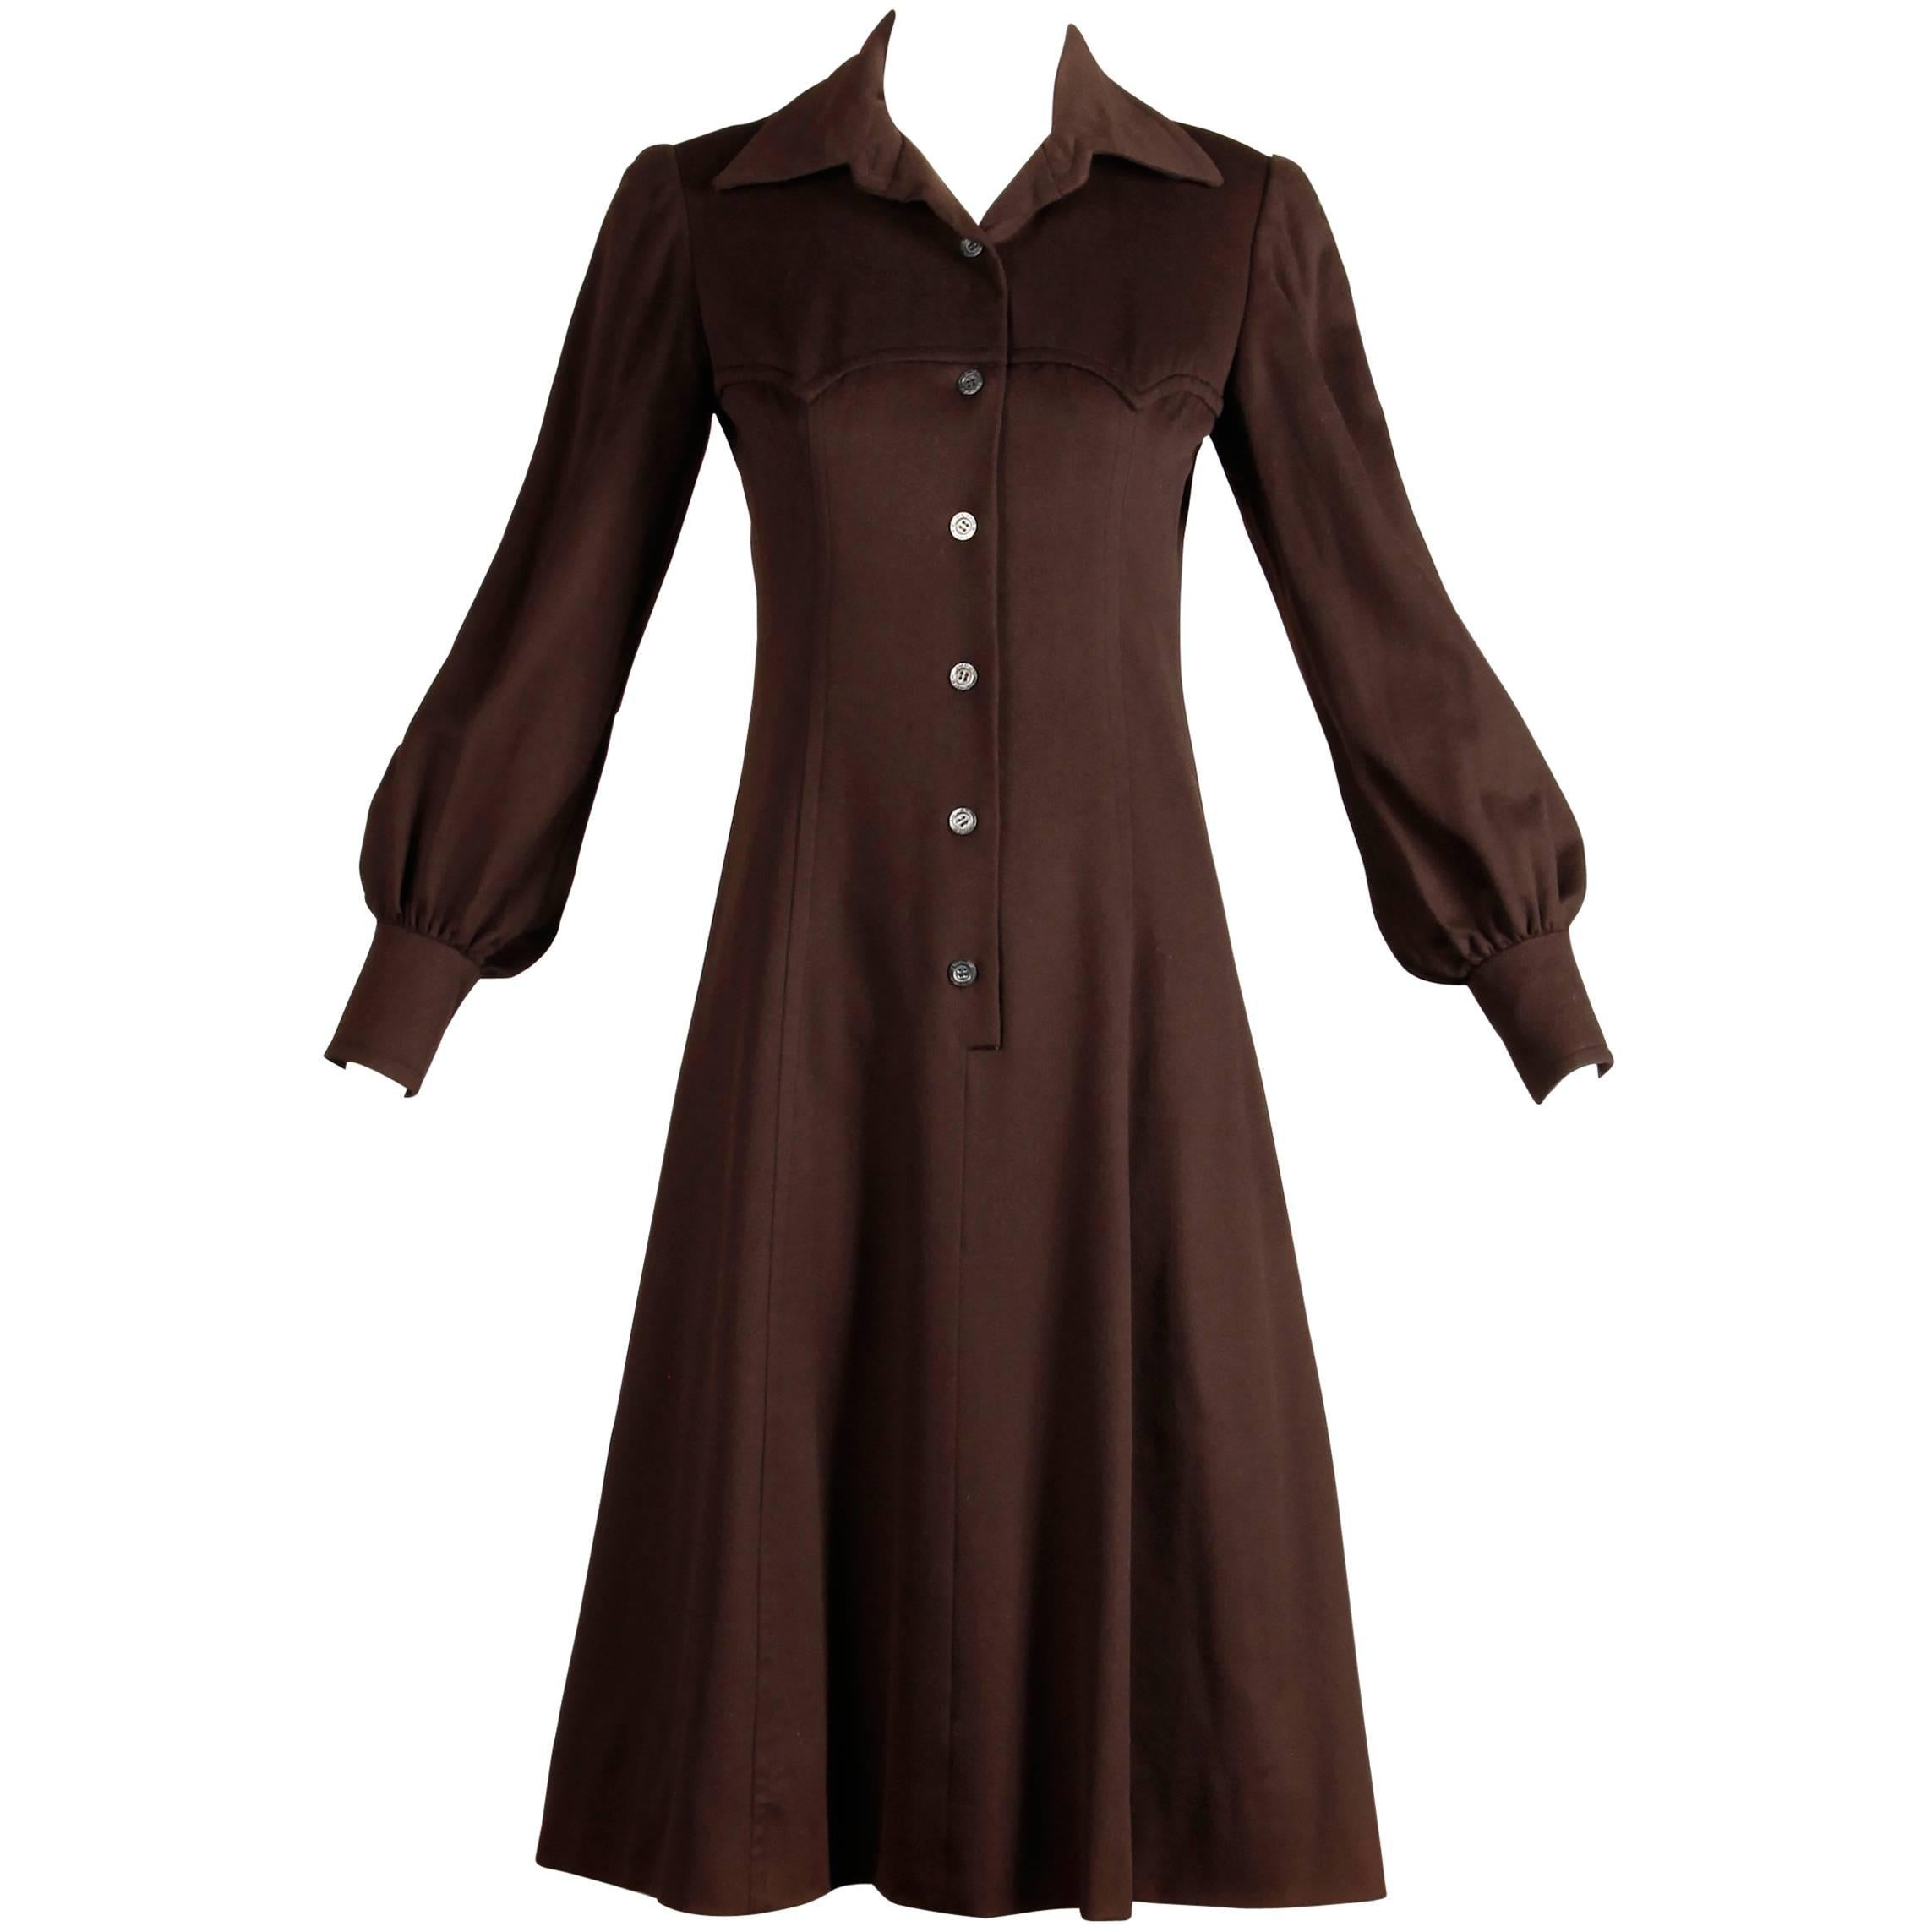 1970s Hermes Vintage Brown Cashmere + Silk Coat or Shirt Dress